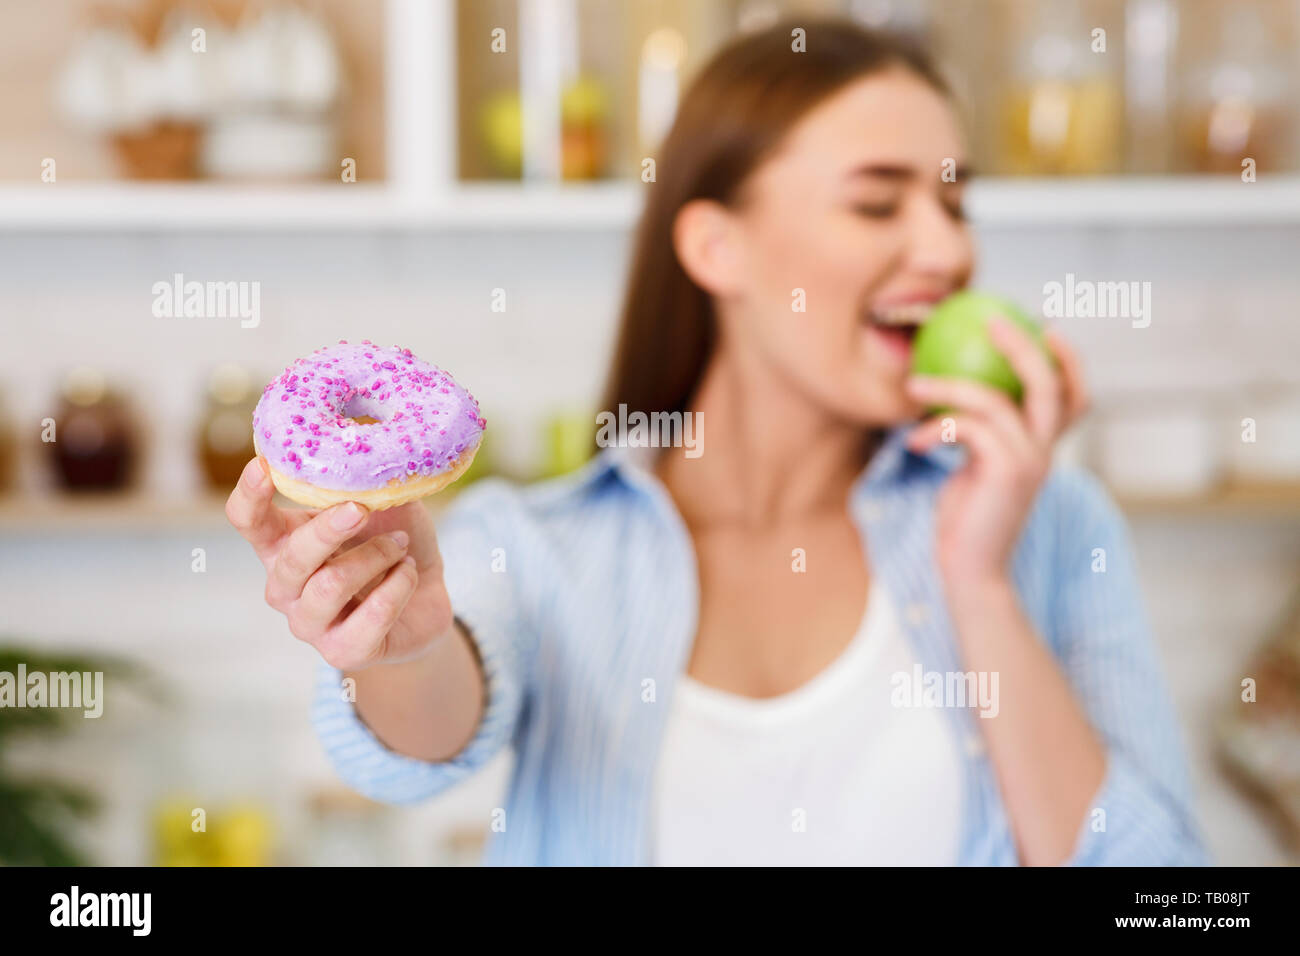 Healthy Eating. Girl Rejecting Junk Food, Choosing Fresh Apple Stock Photo